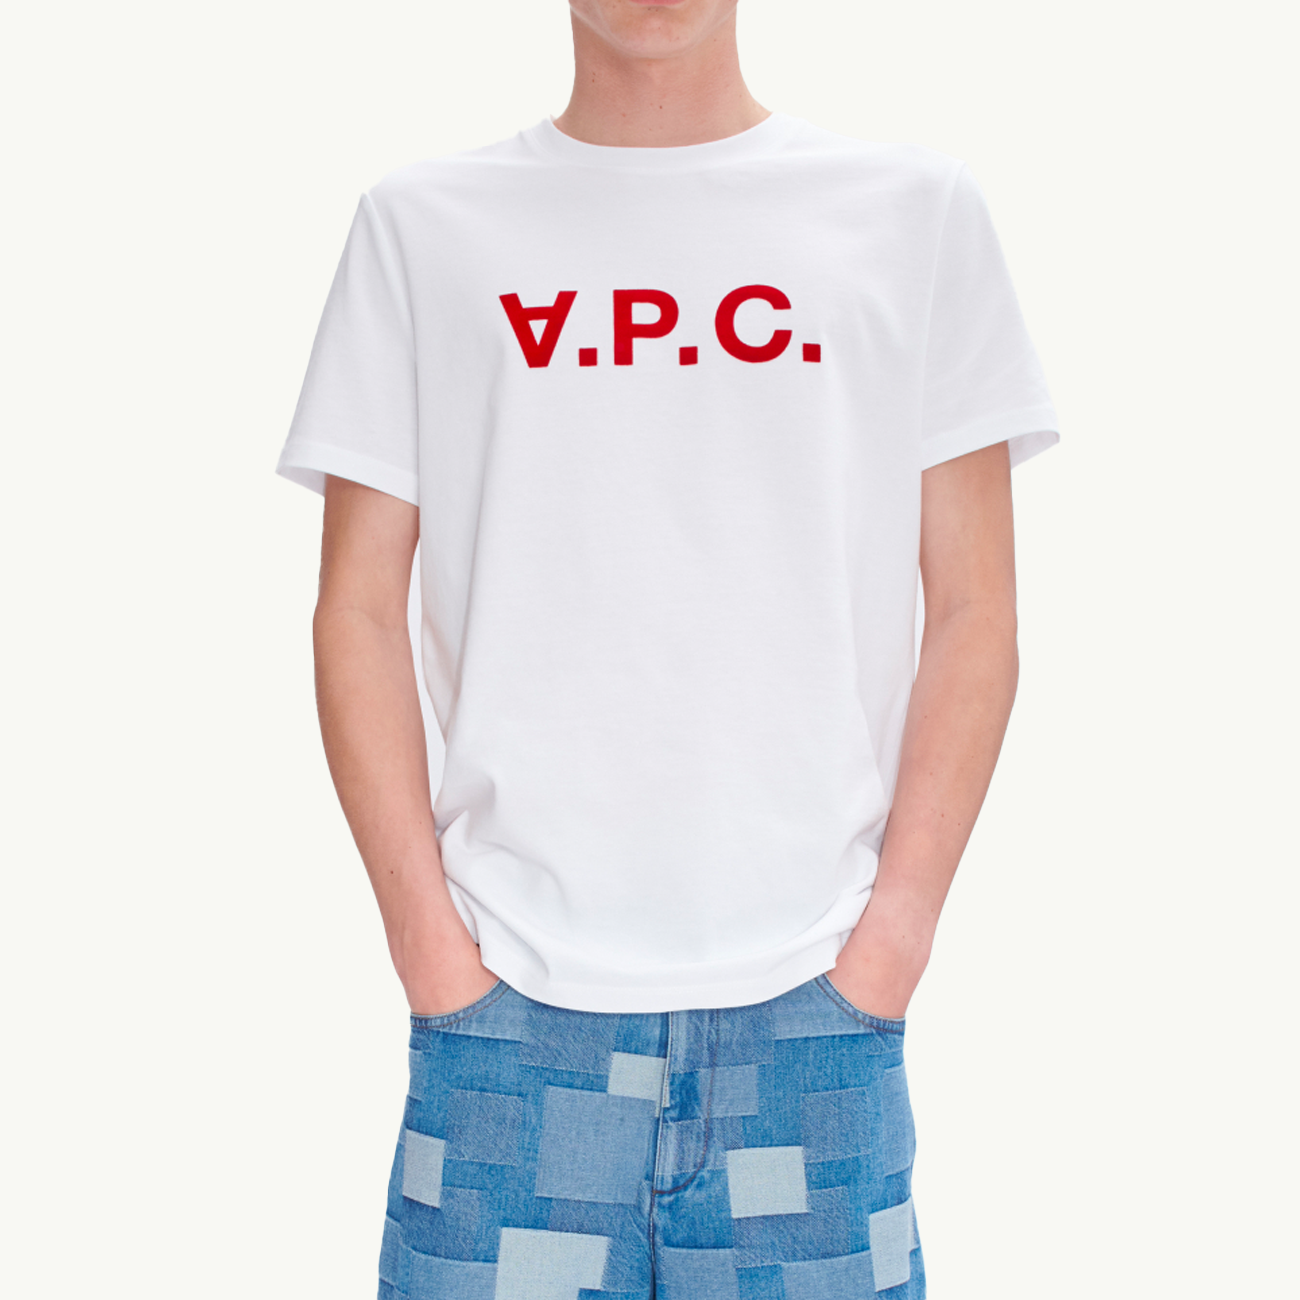 VPC T-Shirt - White/Red